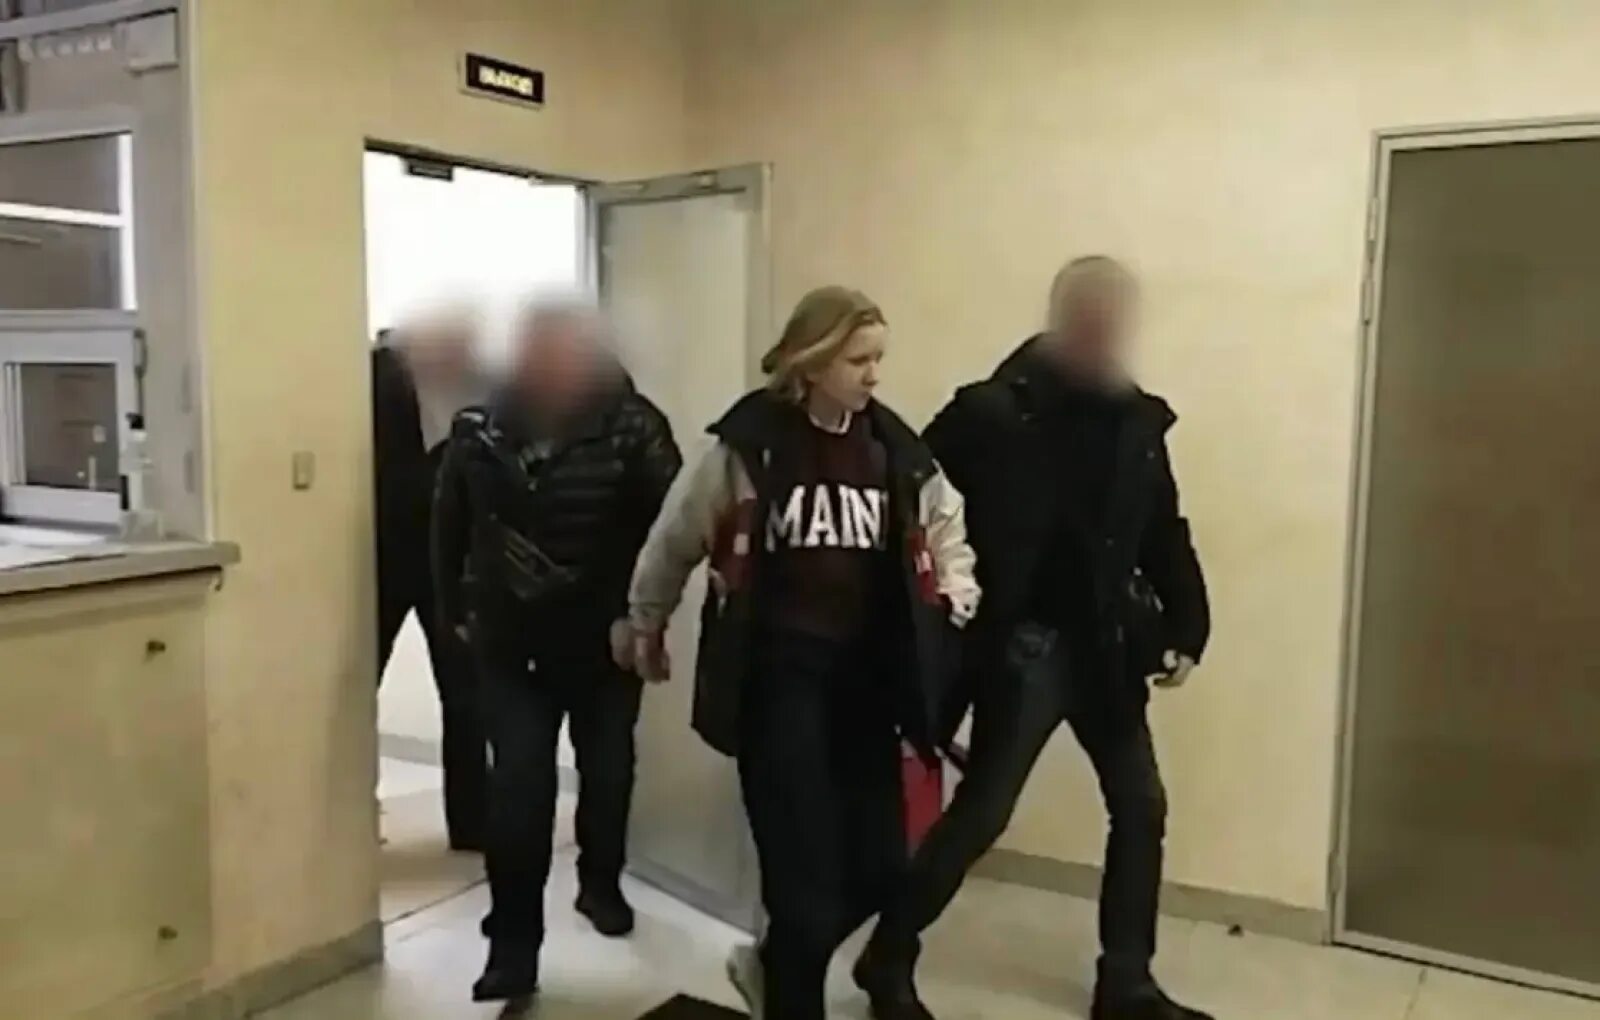 Показать видео теракта в москве. Девушка полицейский. Задержание Дарьи Треповой фото. Арестованные женщины. Девушка устроила теракт.